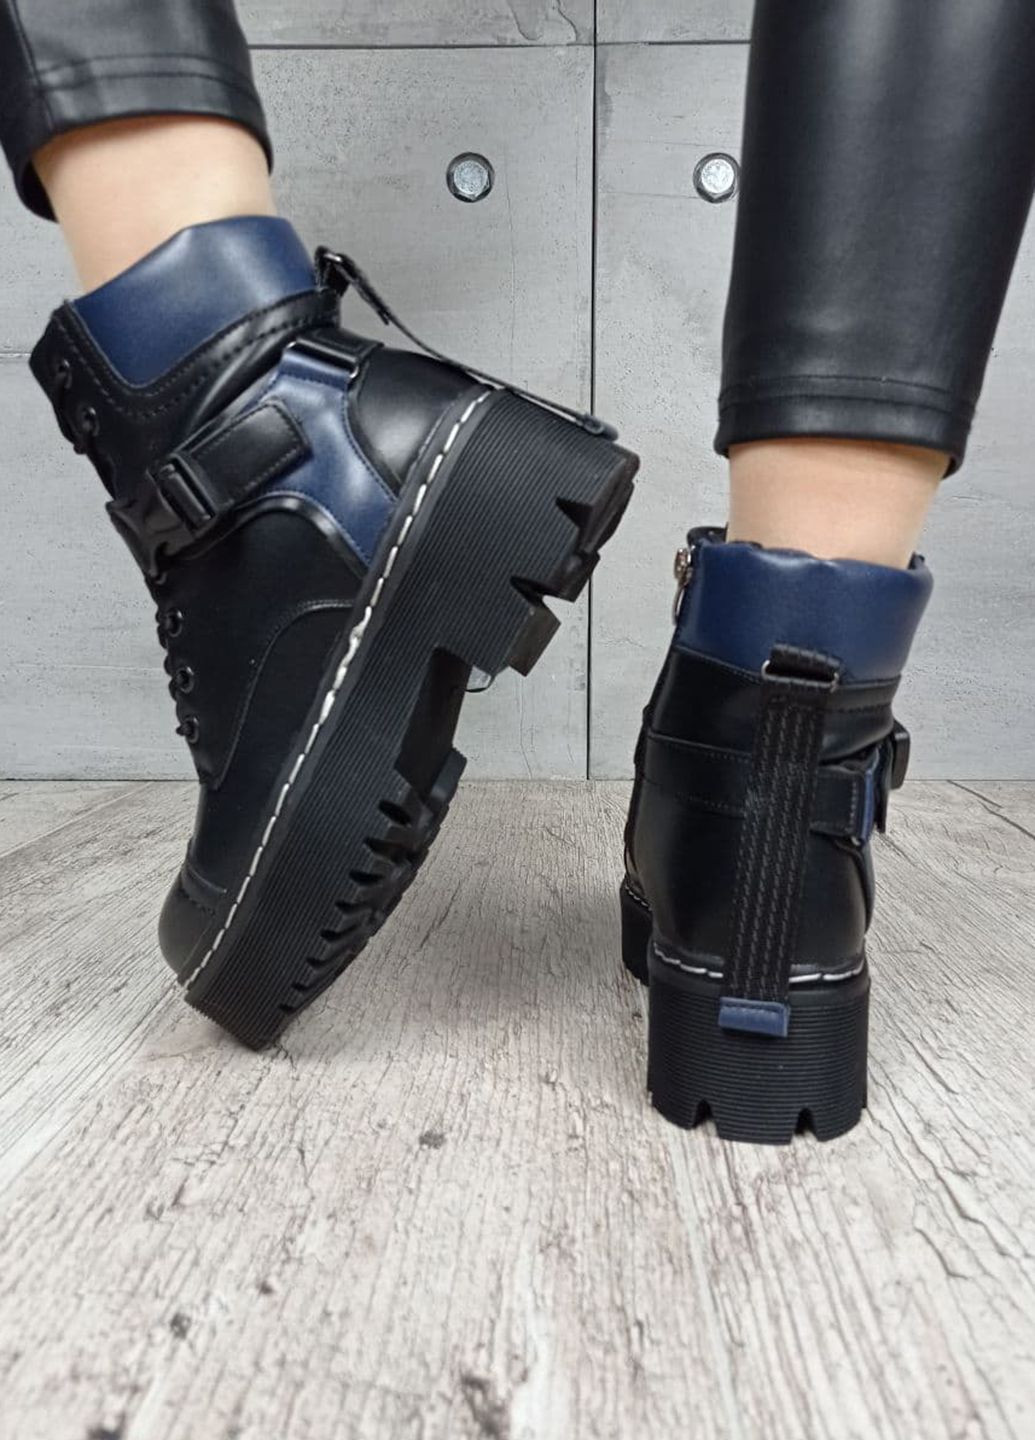 Зимние ботинки Violeta Wonex из искусственной кожи